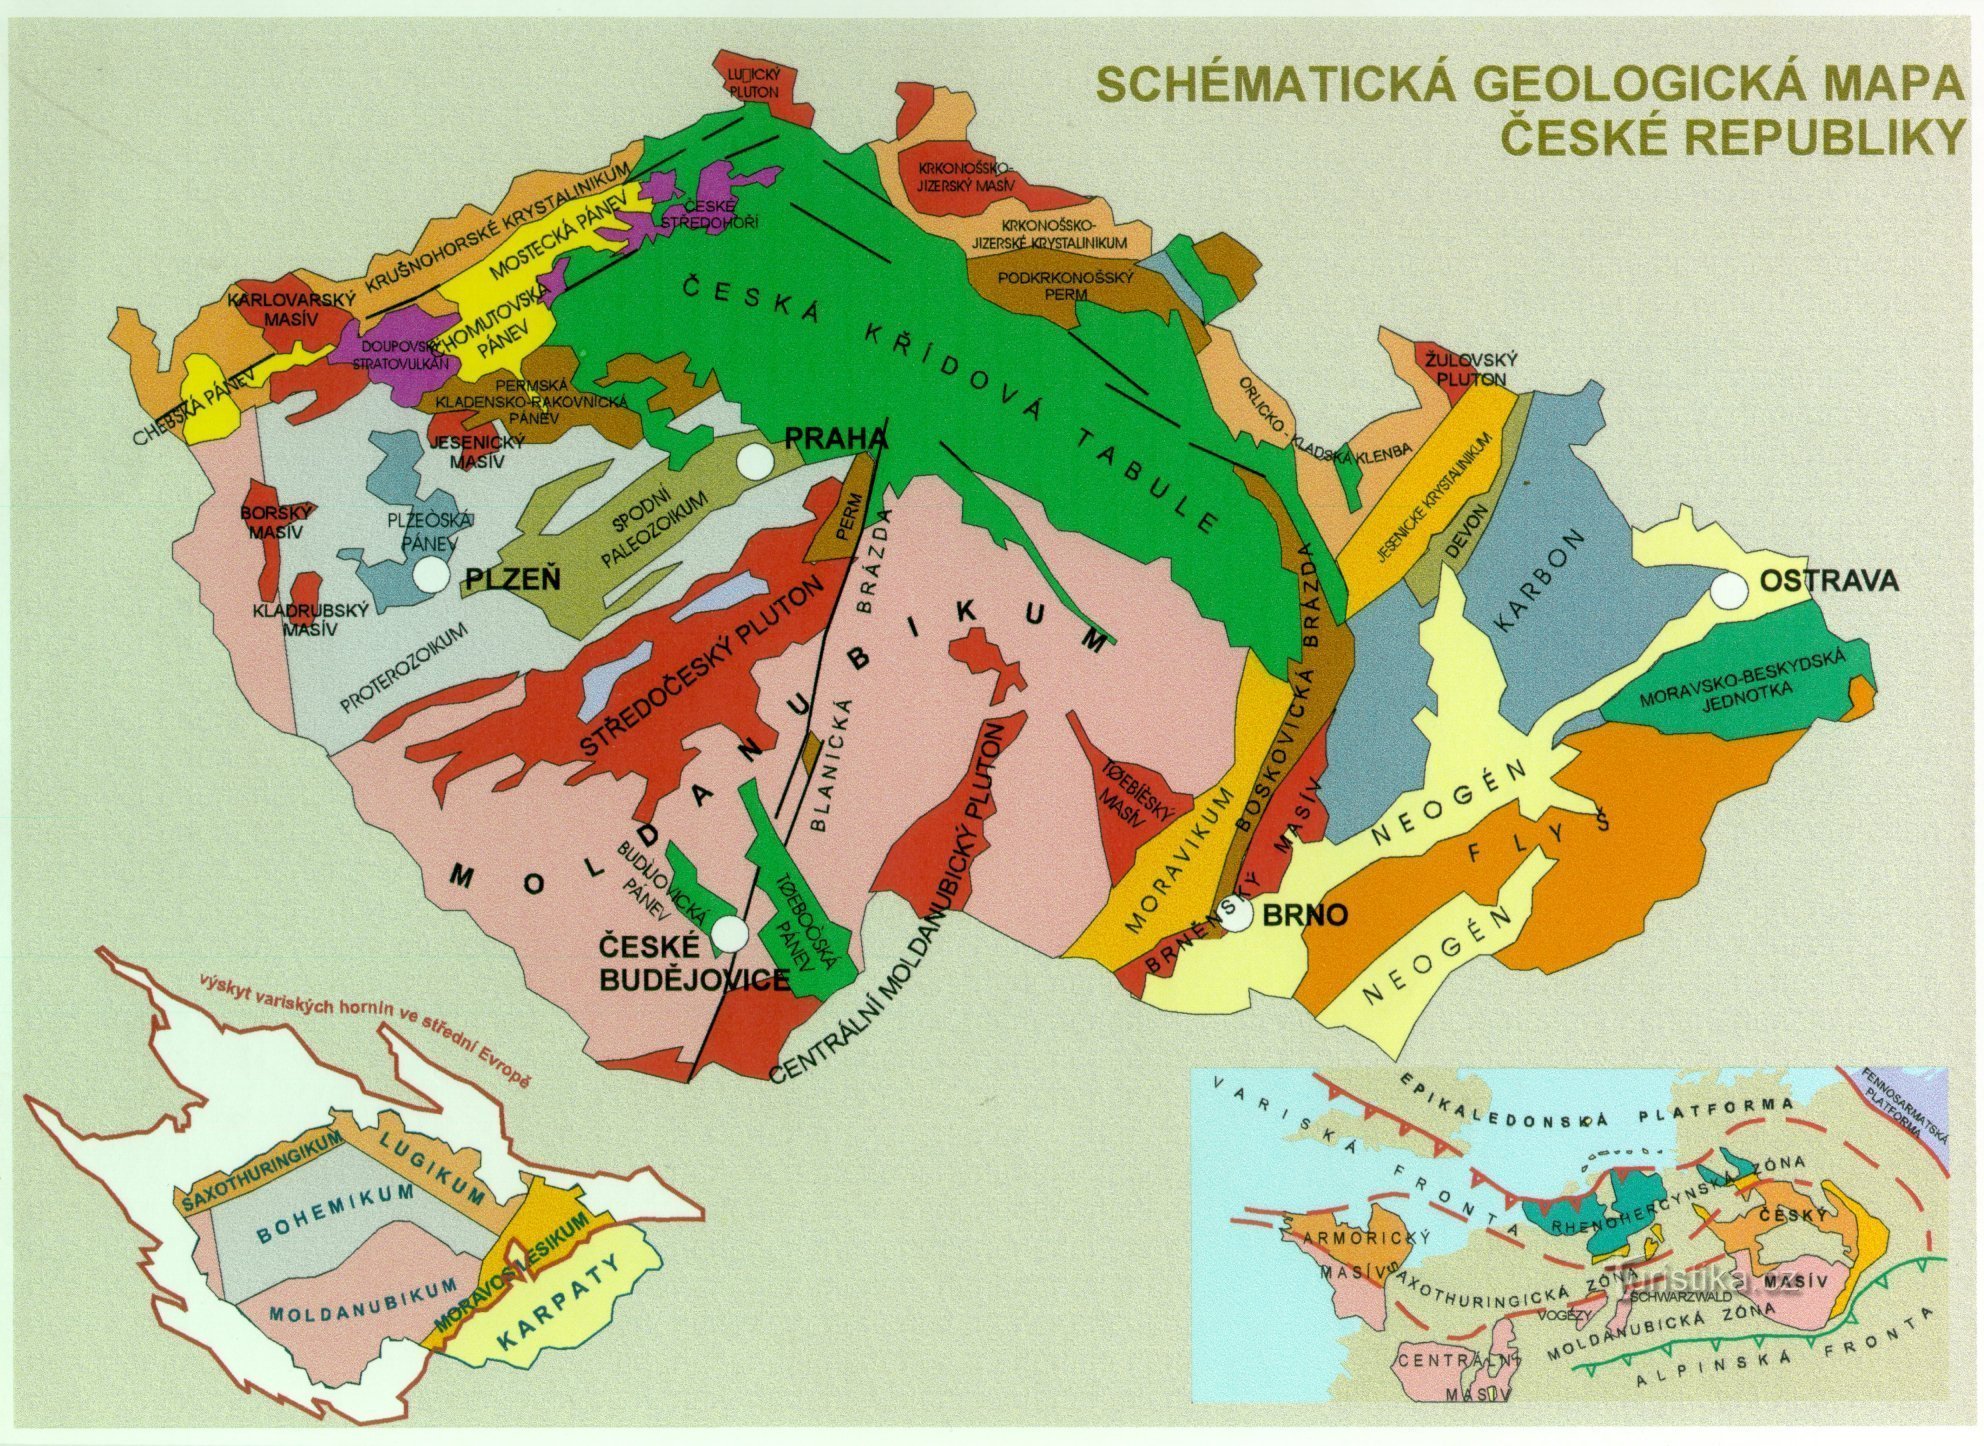 mapa geológico de la República Checa - imagen complementaria al texto (de https://www.ig.